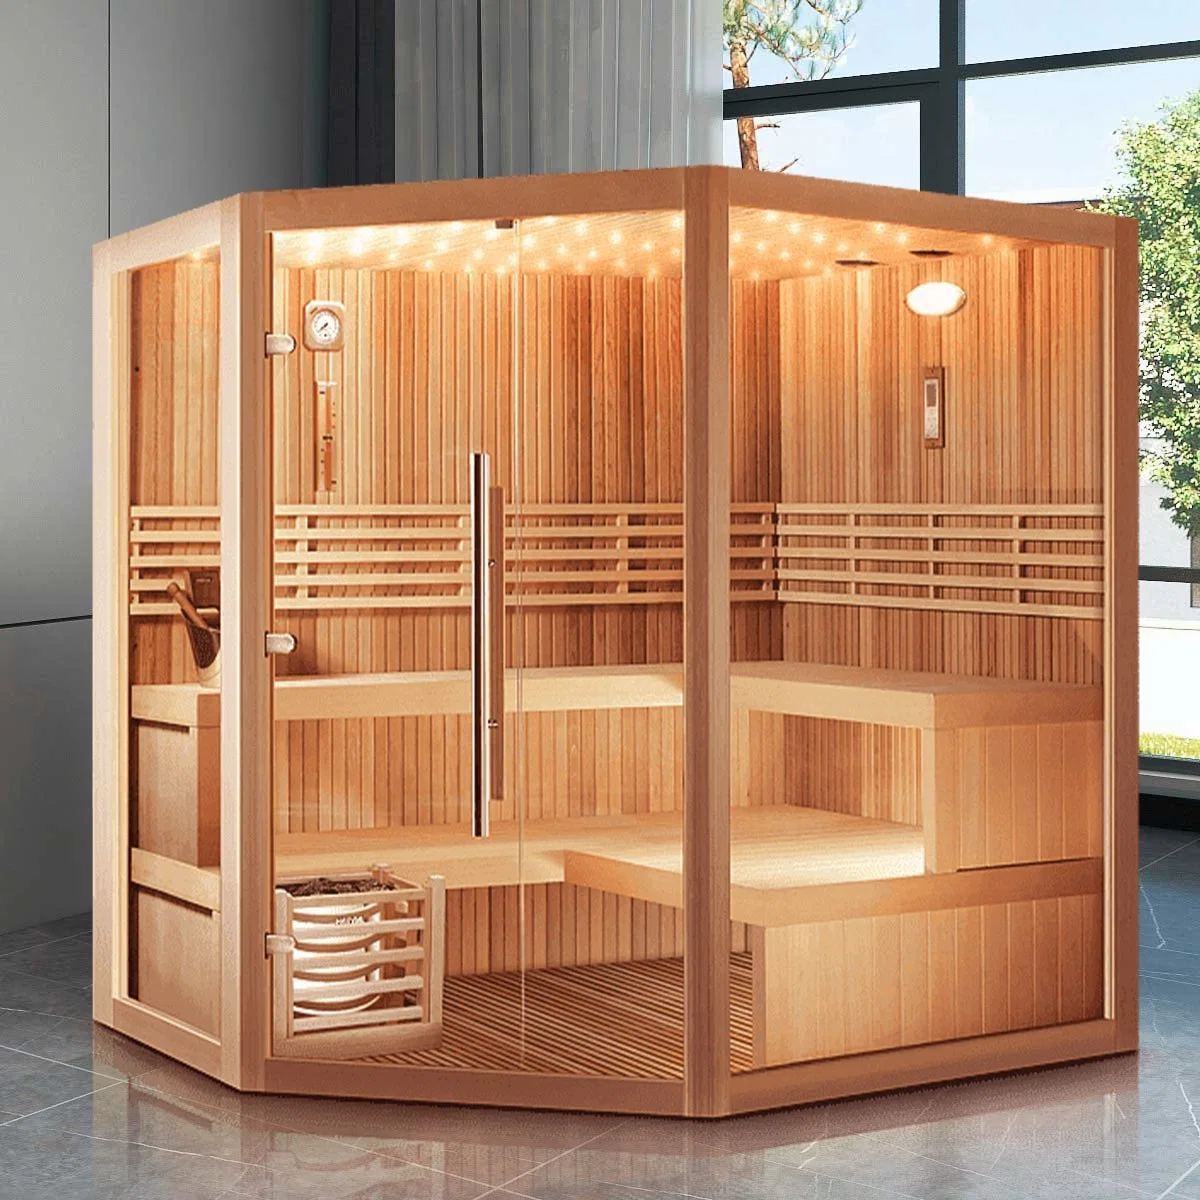 VHealth sauna Fabricant bain de vapeur humide approvisionnement de grande livraison rapide